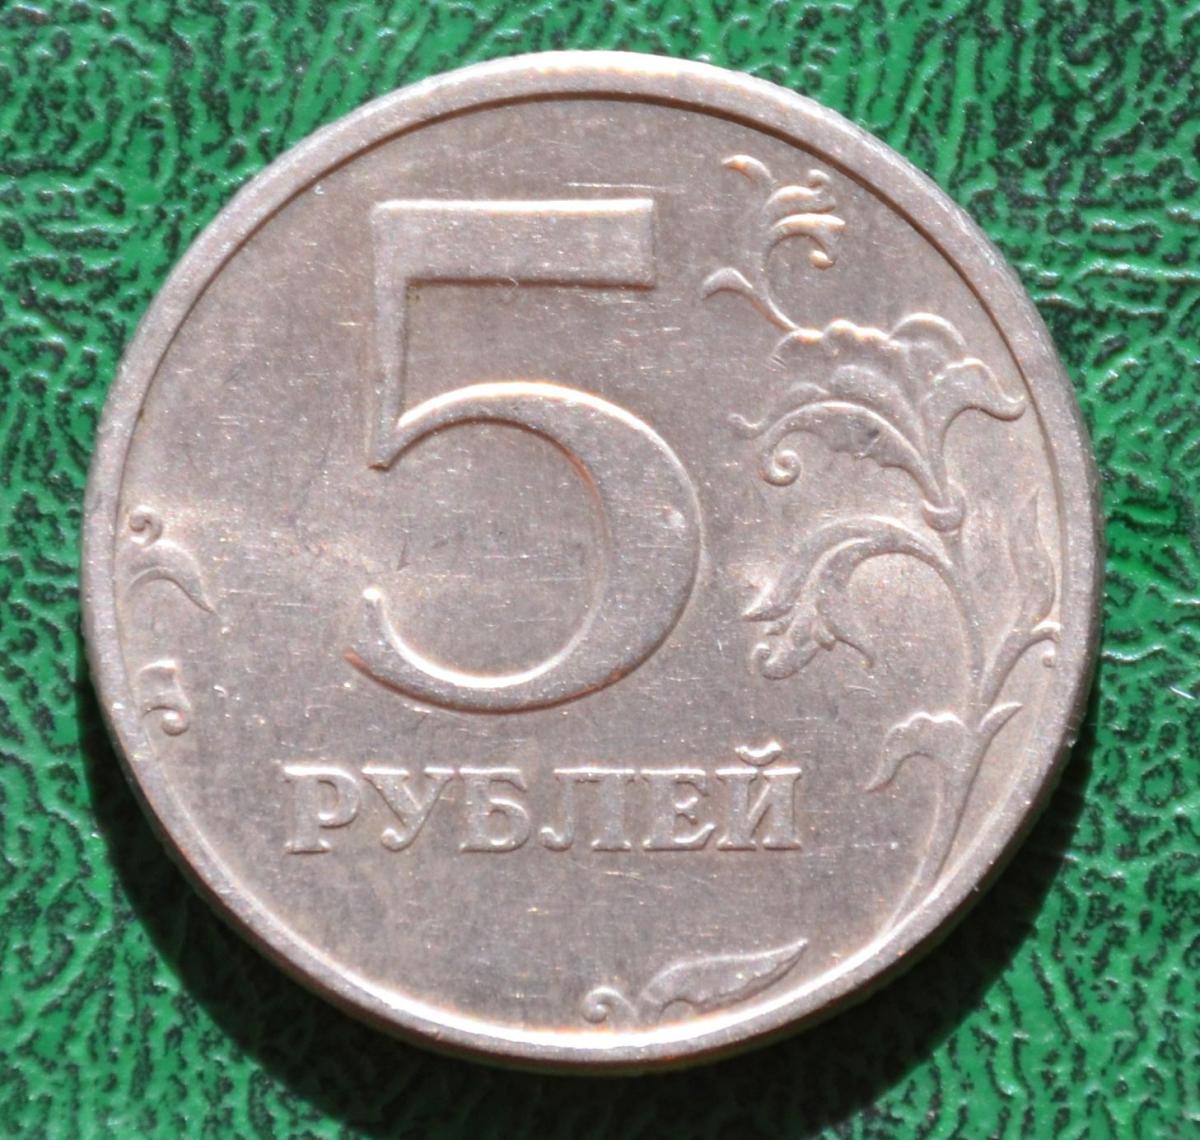 5 рублей 1998 г. СПМД. 